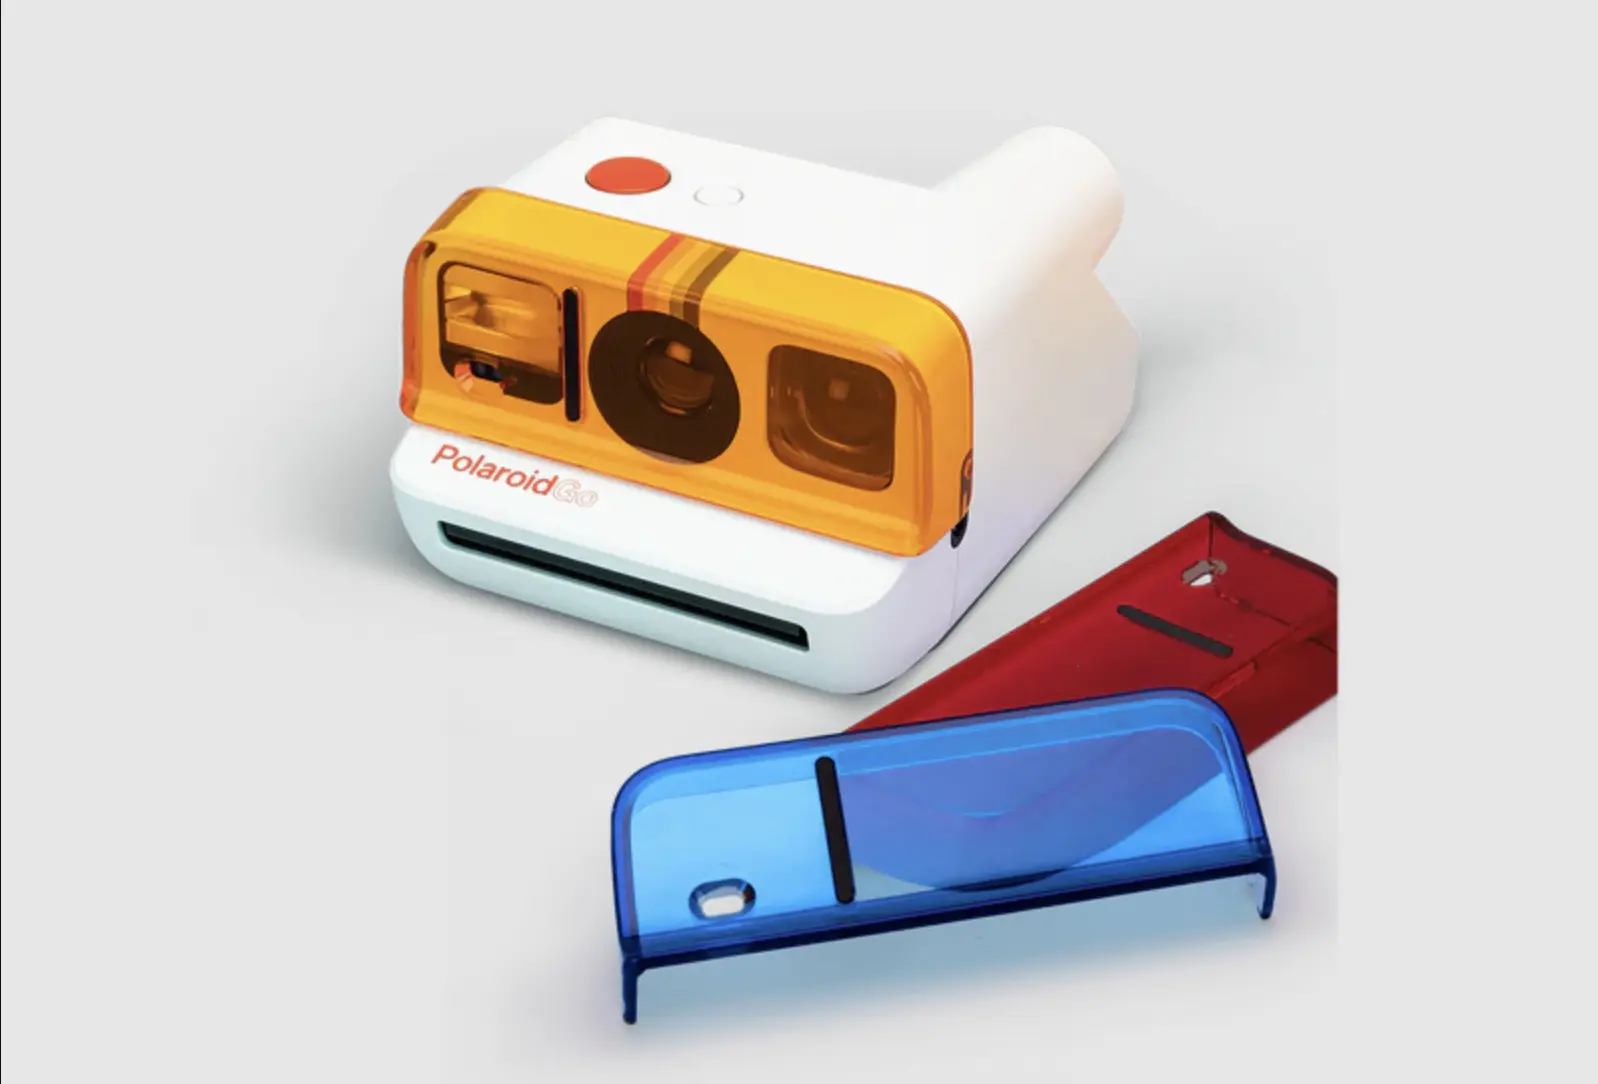 Conoce la nueva cámara instantánea Polaroid Go, la más pequeña del mercado